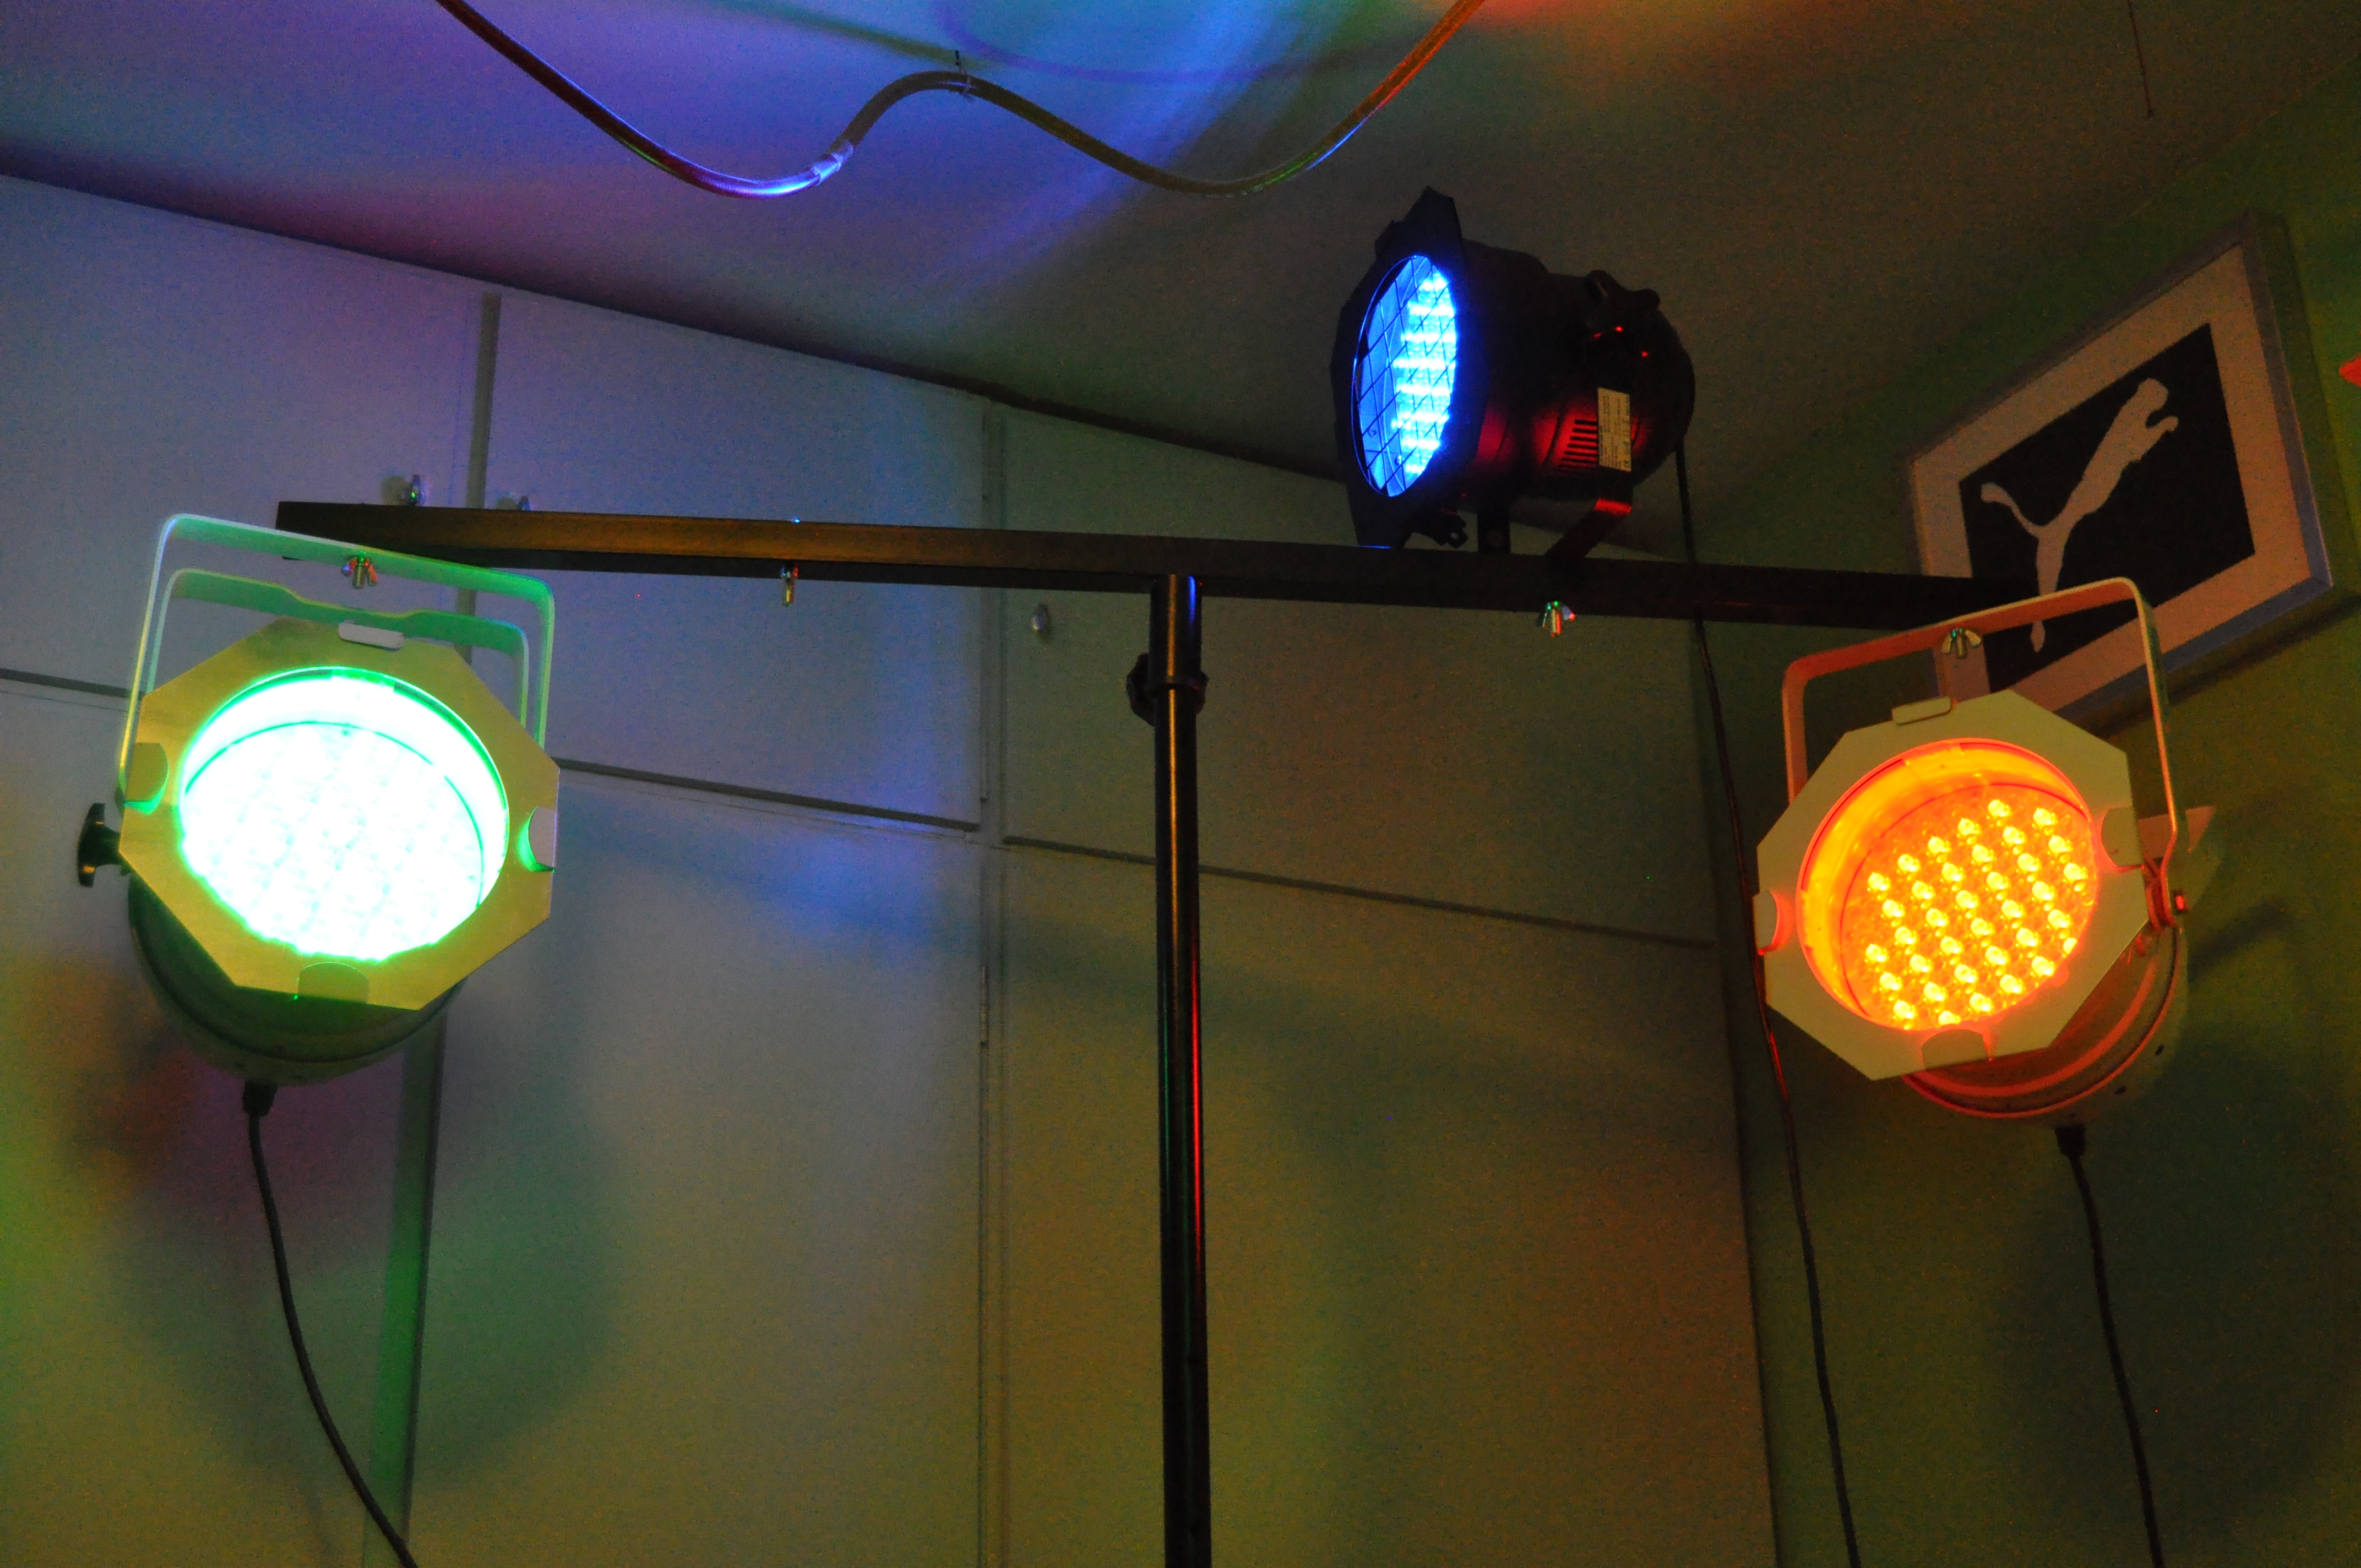 Een statief met 3 PAR-spot's die aan staan; ze zijn ingesteld op de drie in verschillende kleuren (rood, groen, blauw). We kunnen de LED's zien branden.